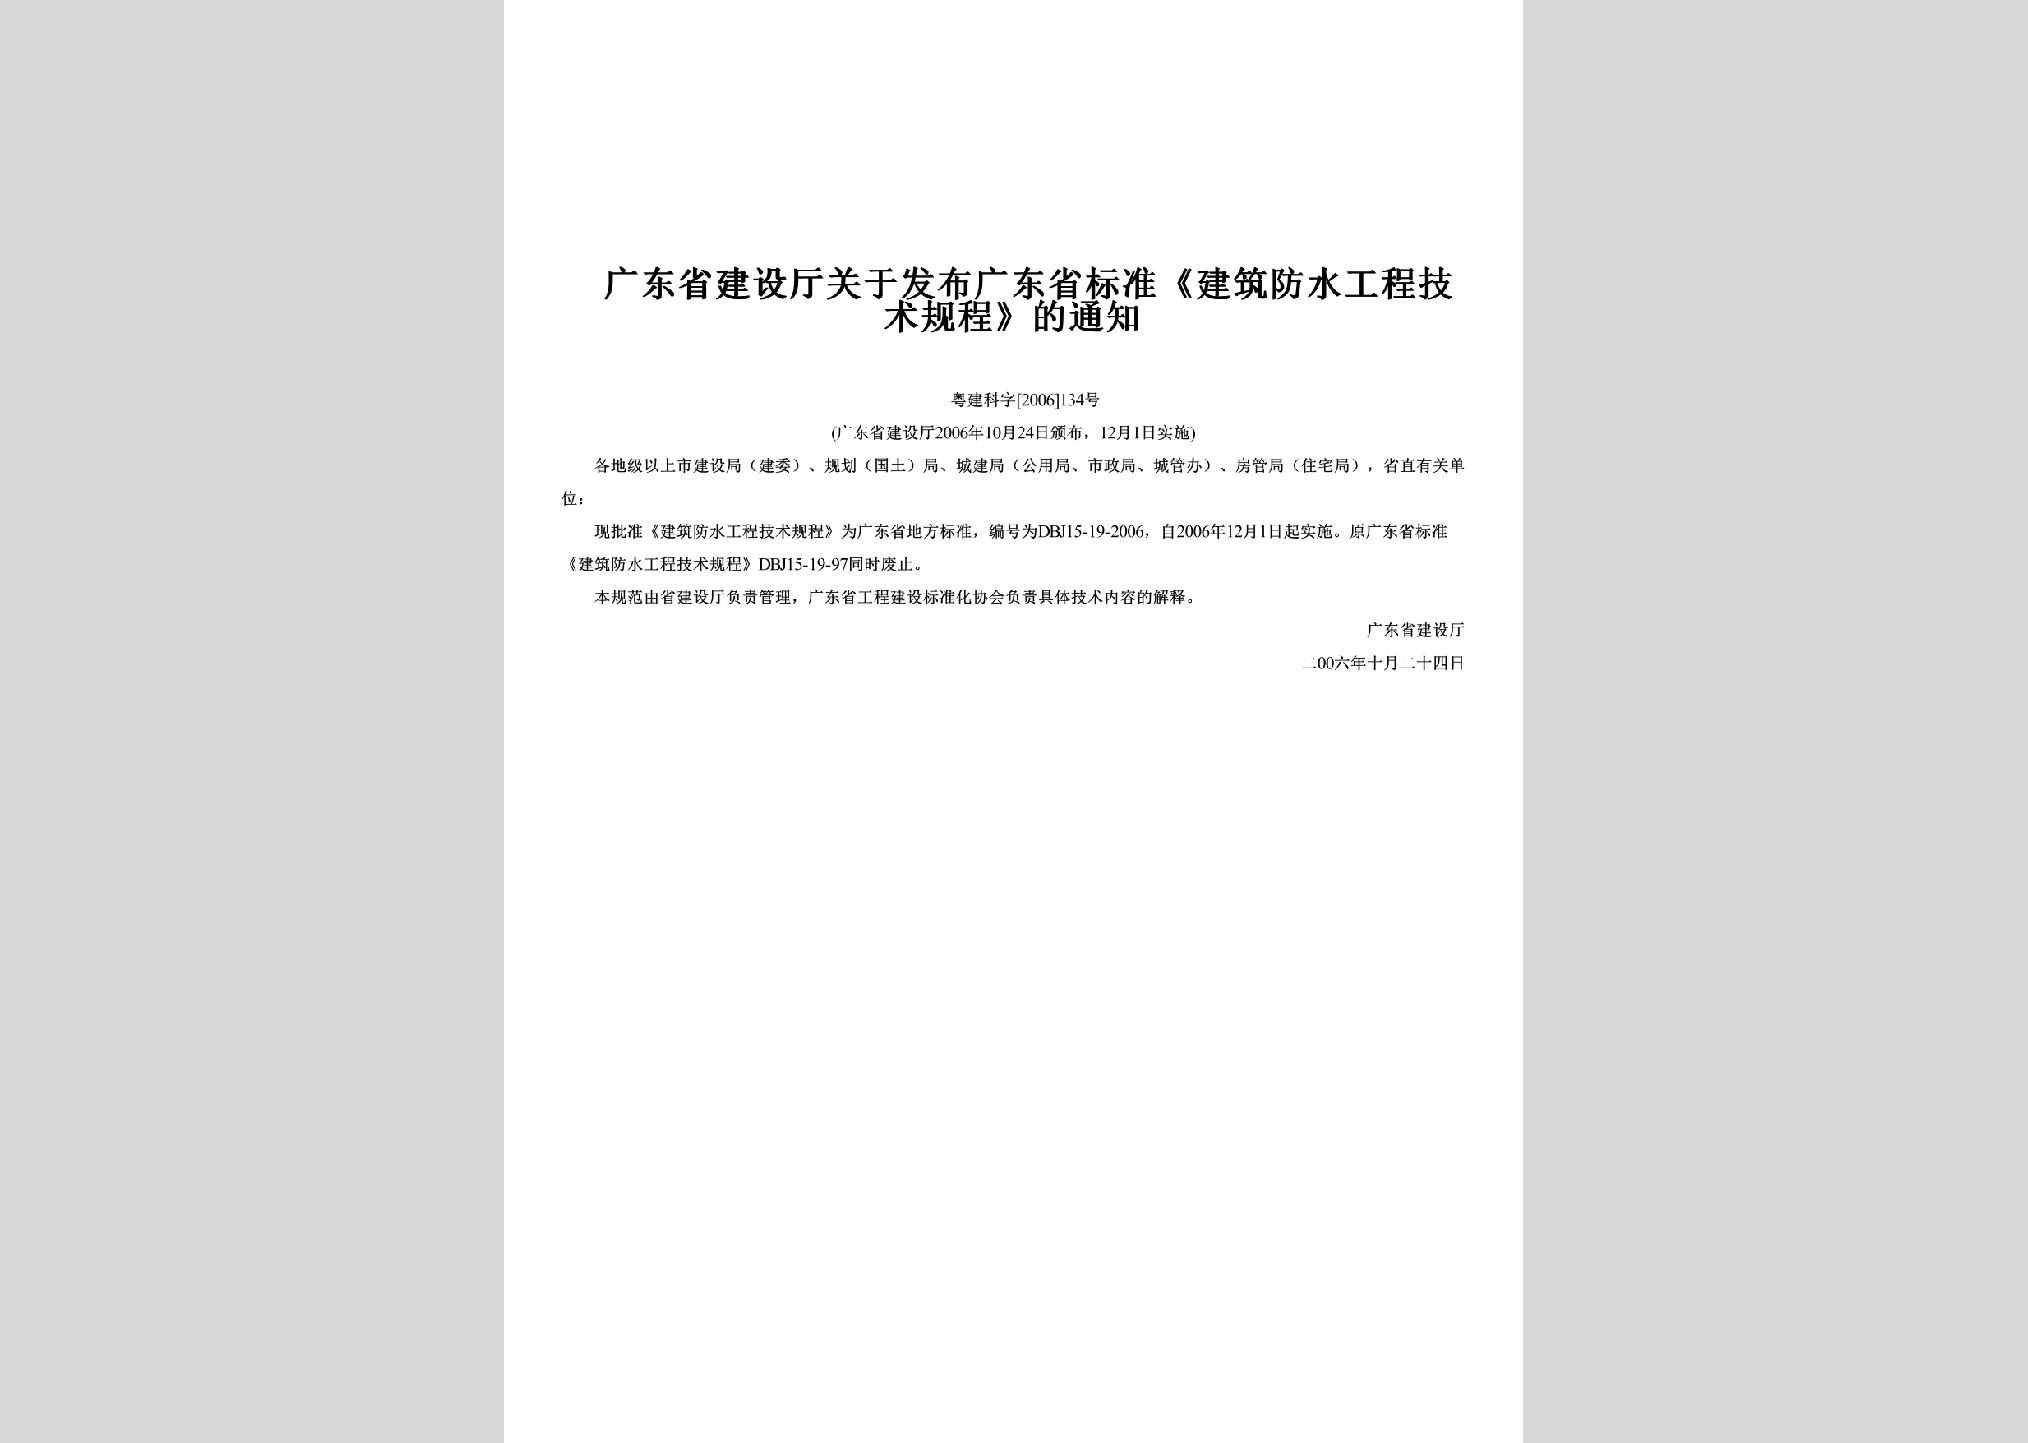 粤建科字[2006]134号：关于发布广东省标准《建筑防水工程技术规程》的通知